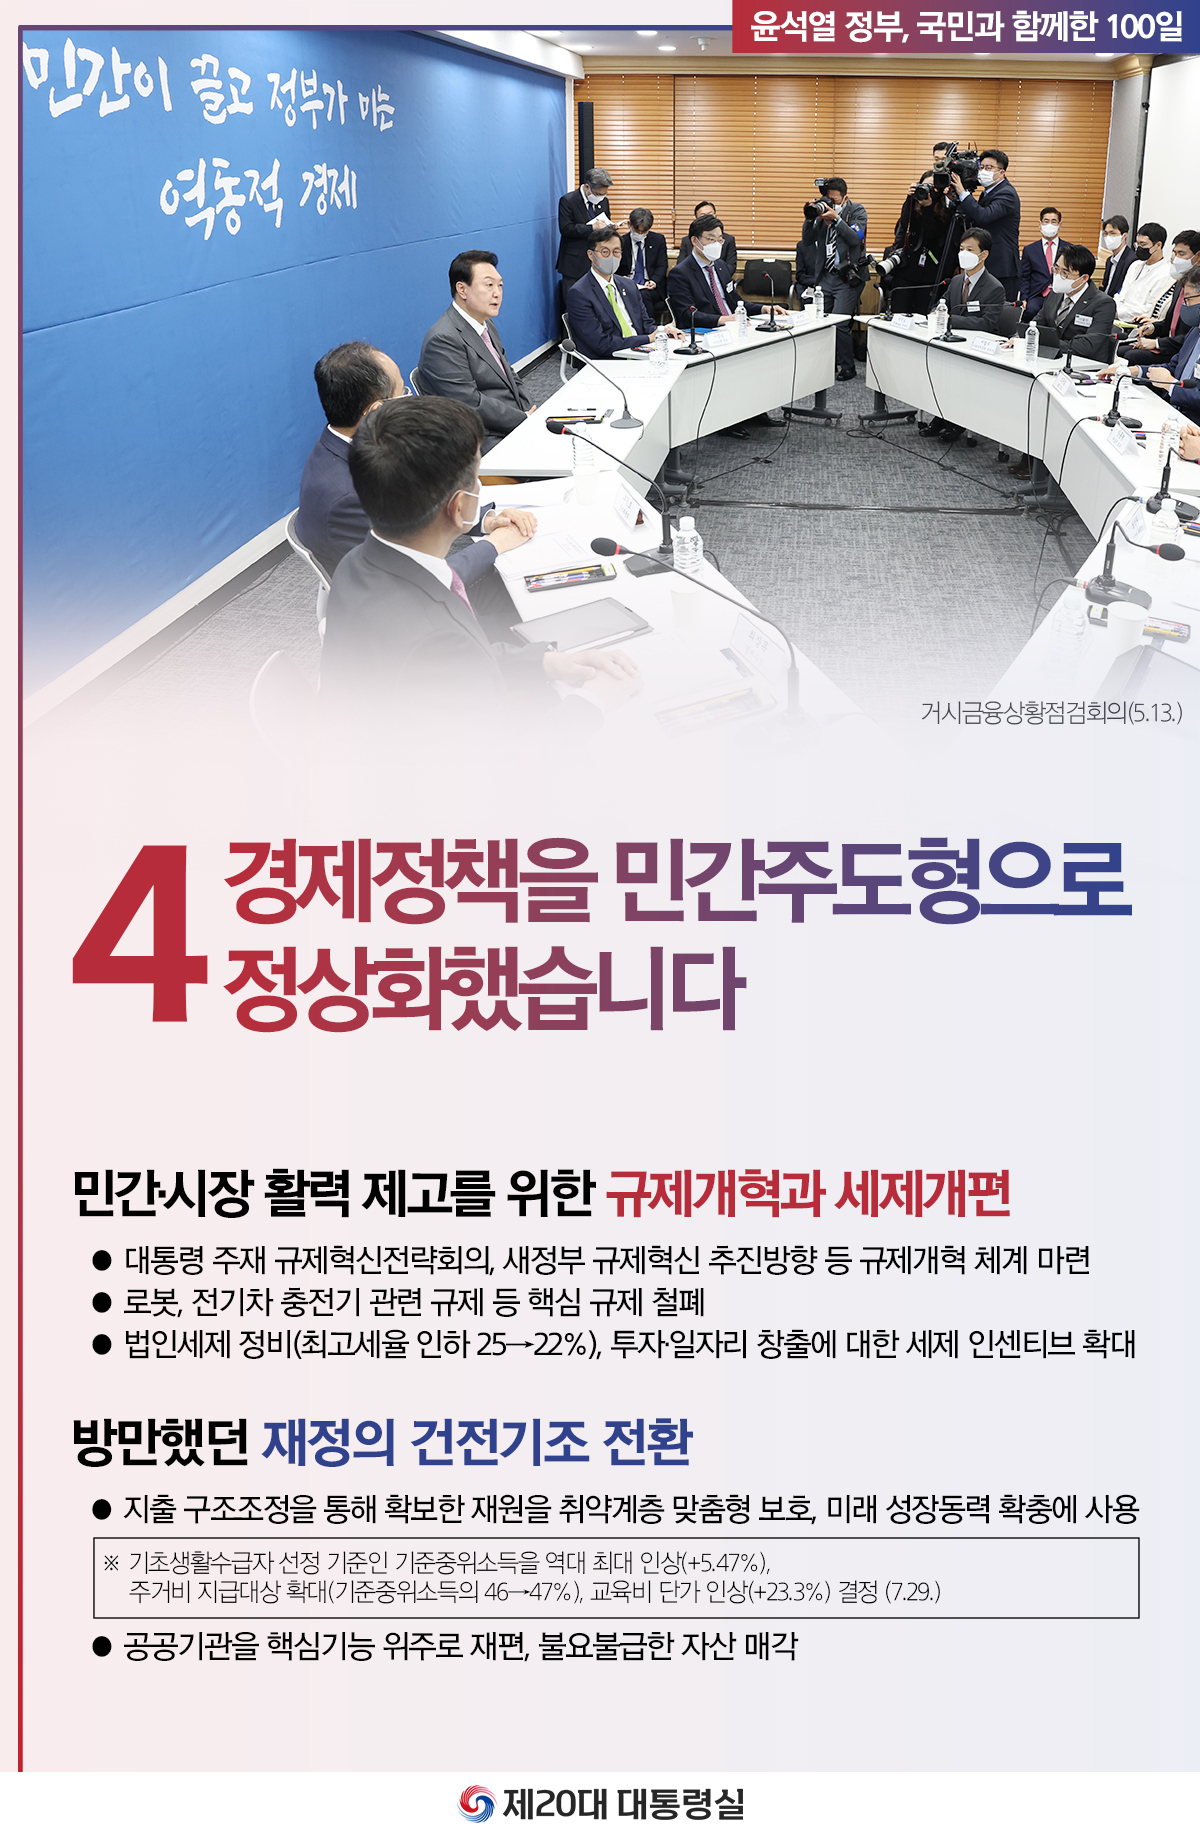 윤석열 정부의 100일, 국민과 함께한 시간들 슬라이드4